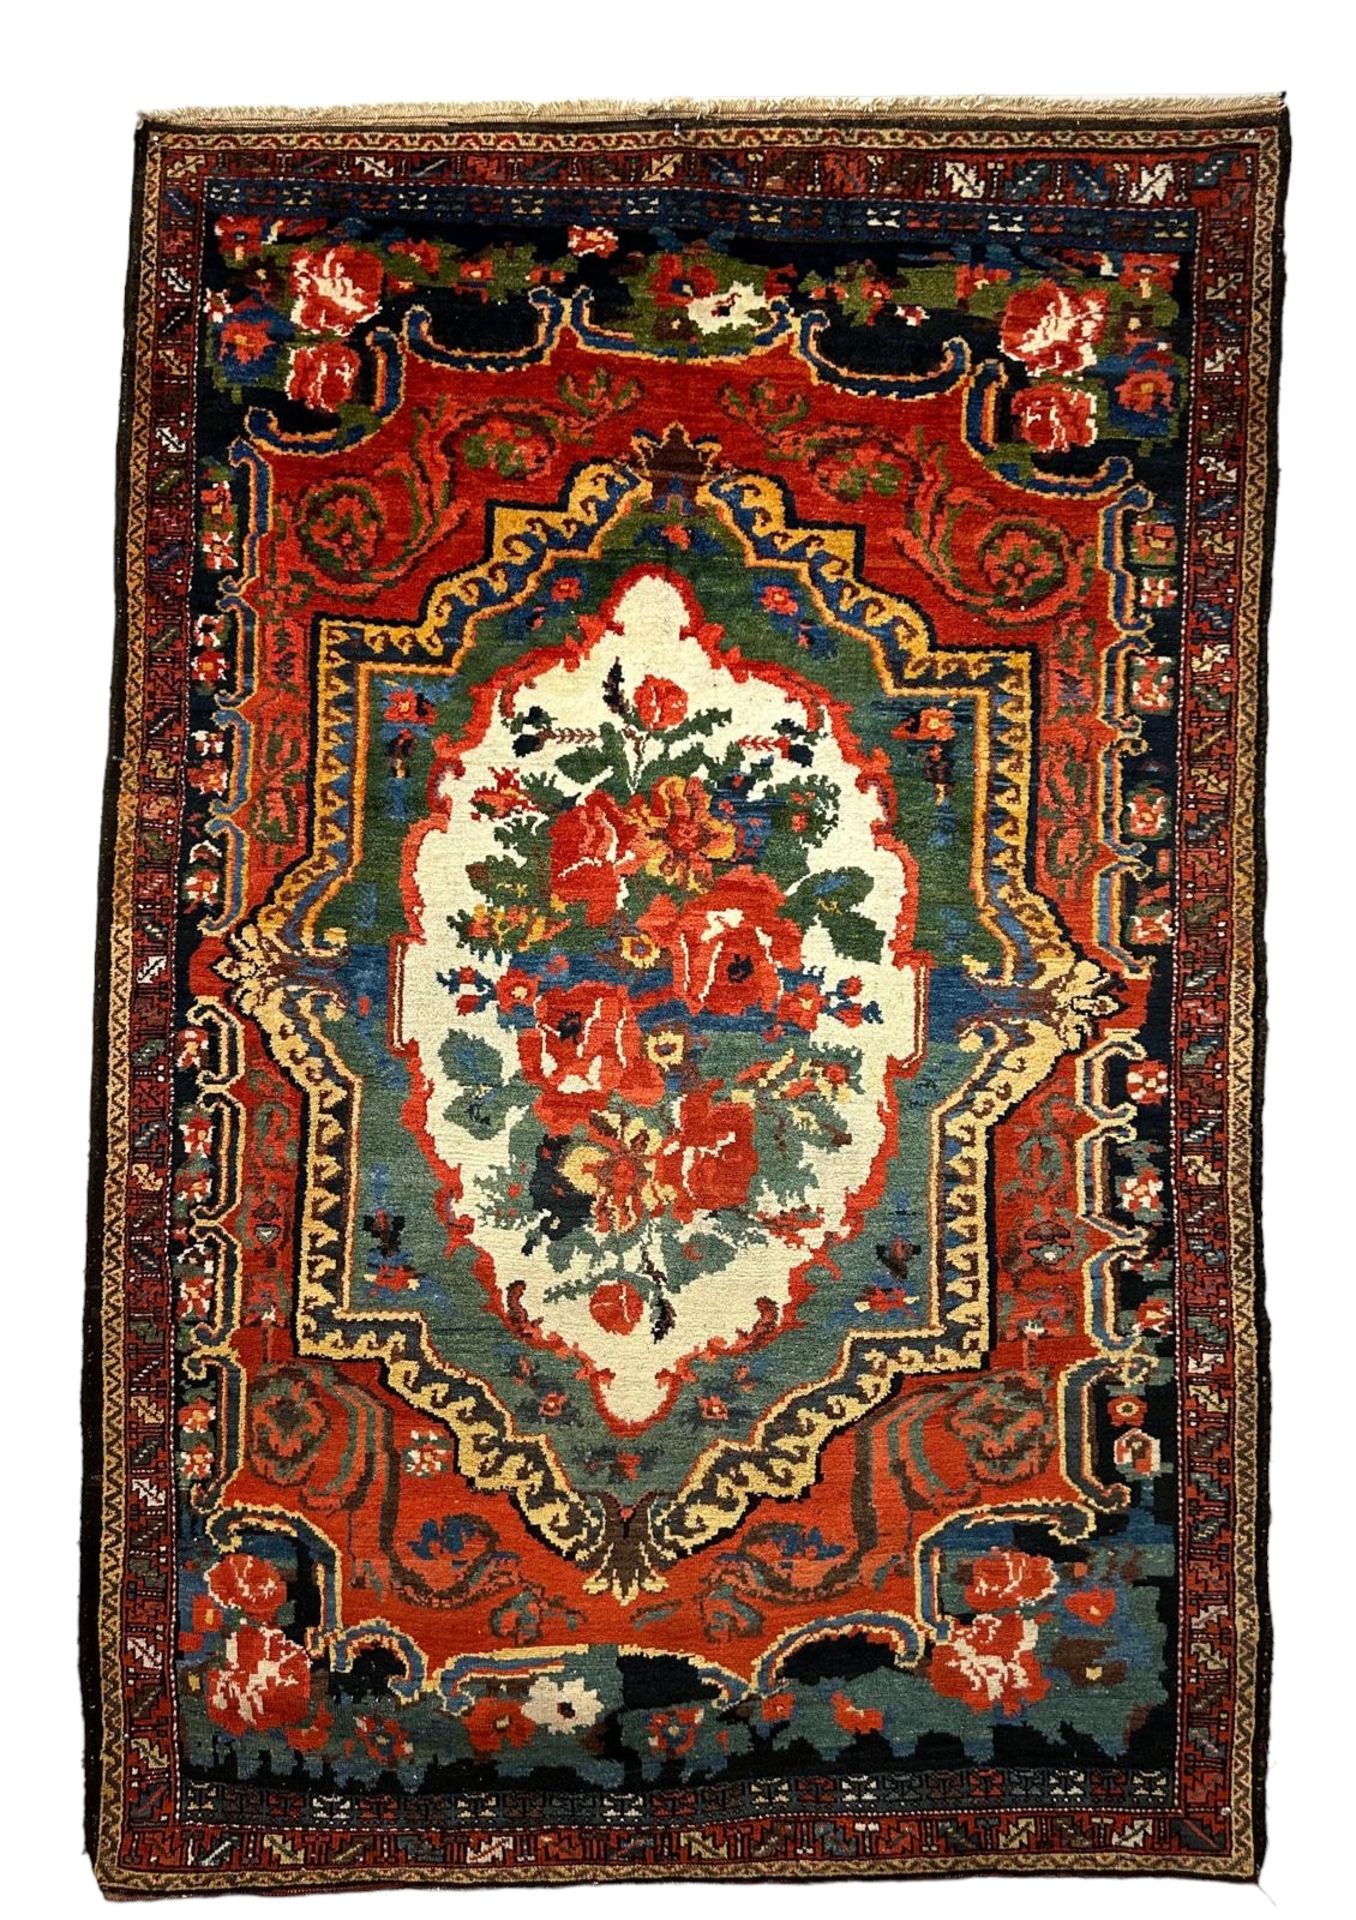 A Baktiar rug, Persia, circa 1890